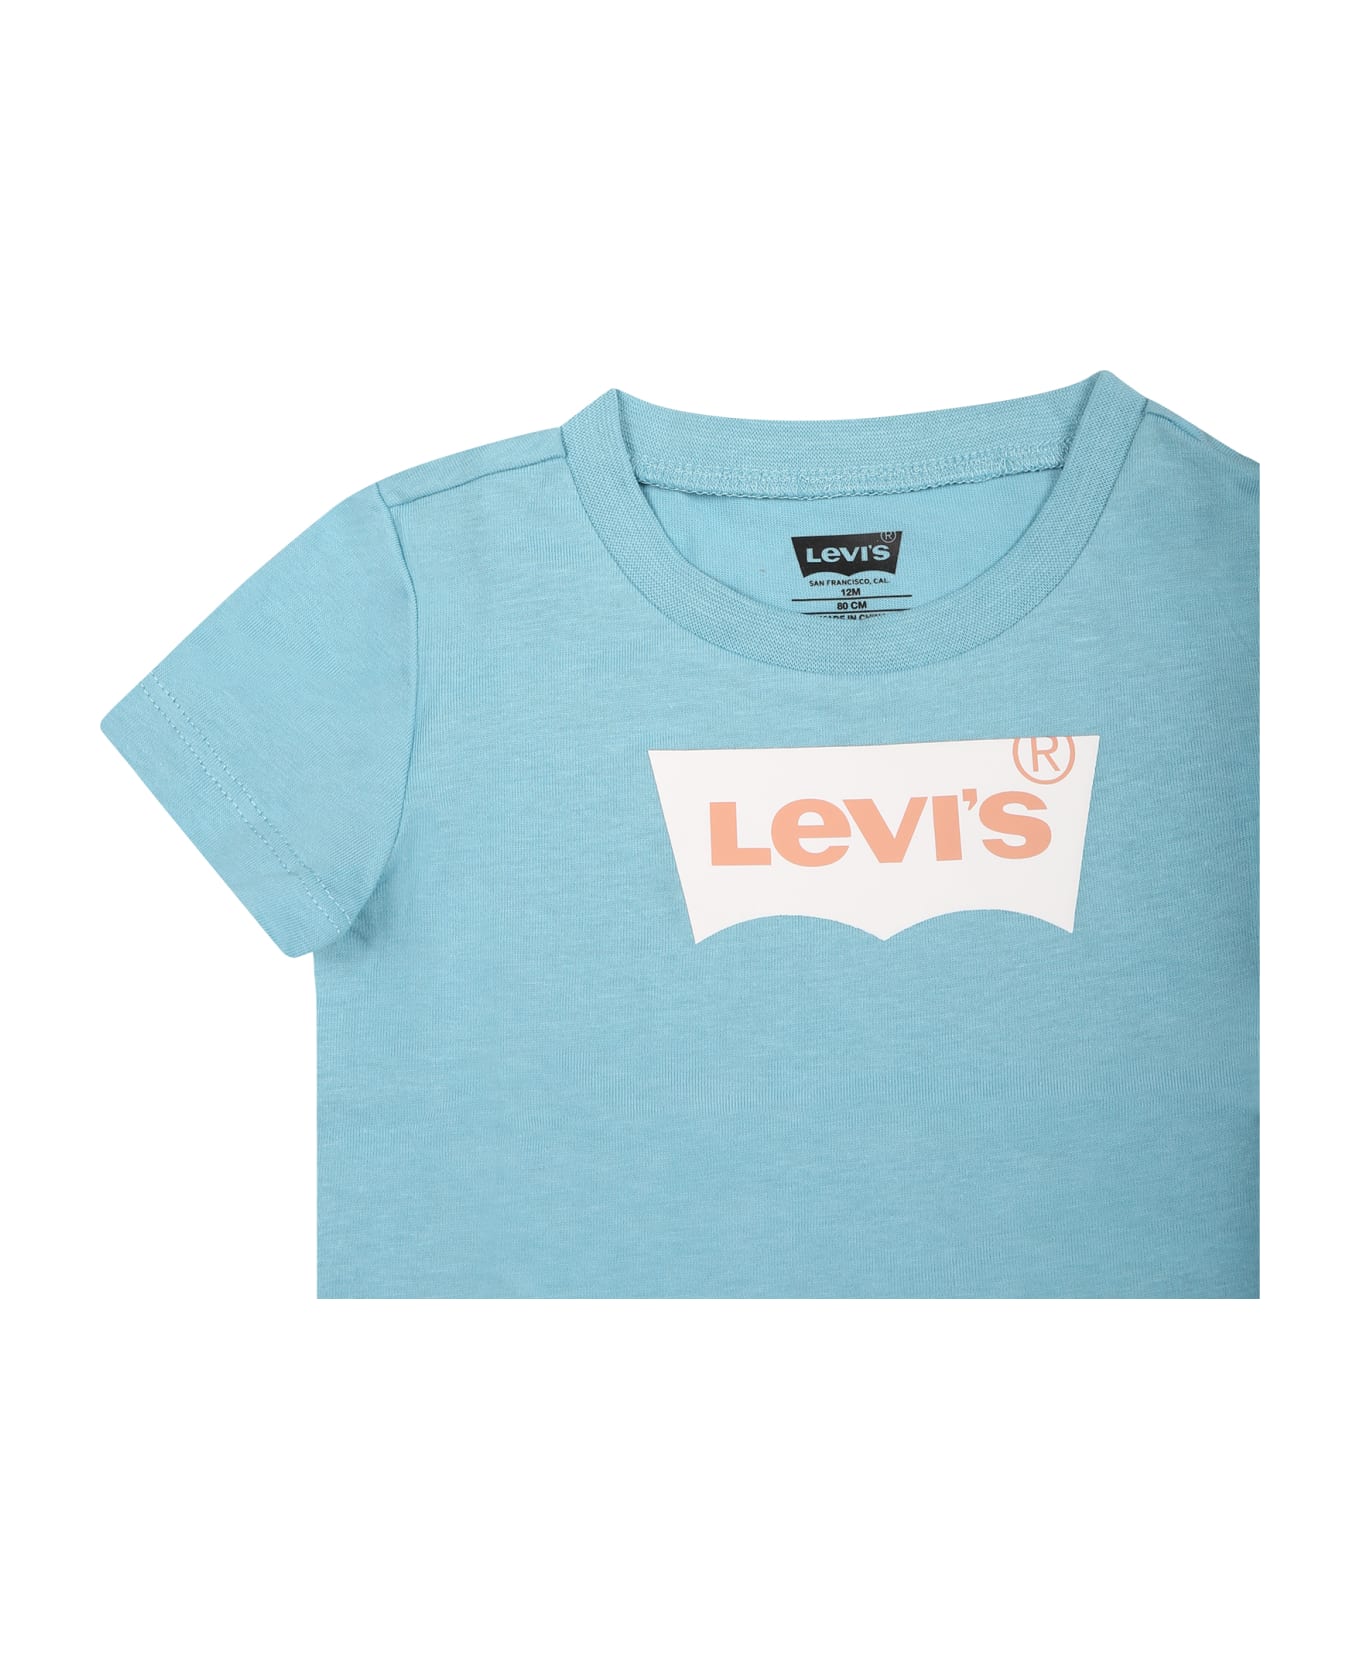 Levi's Light Blue T-shirt For Babykids With Logo - Light Blue